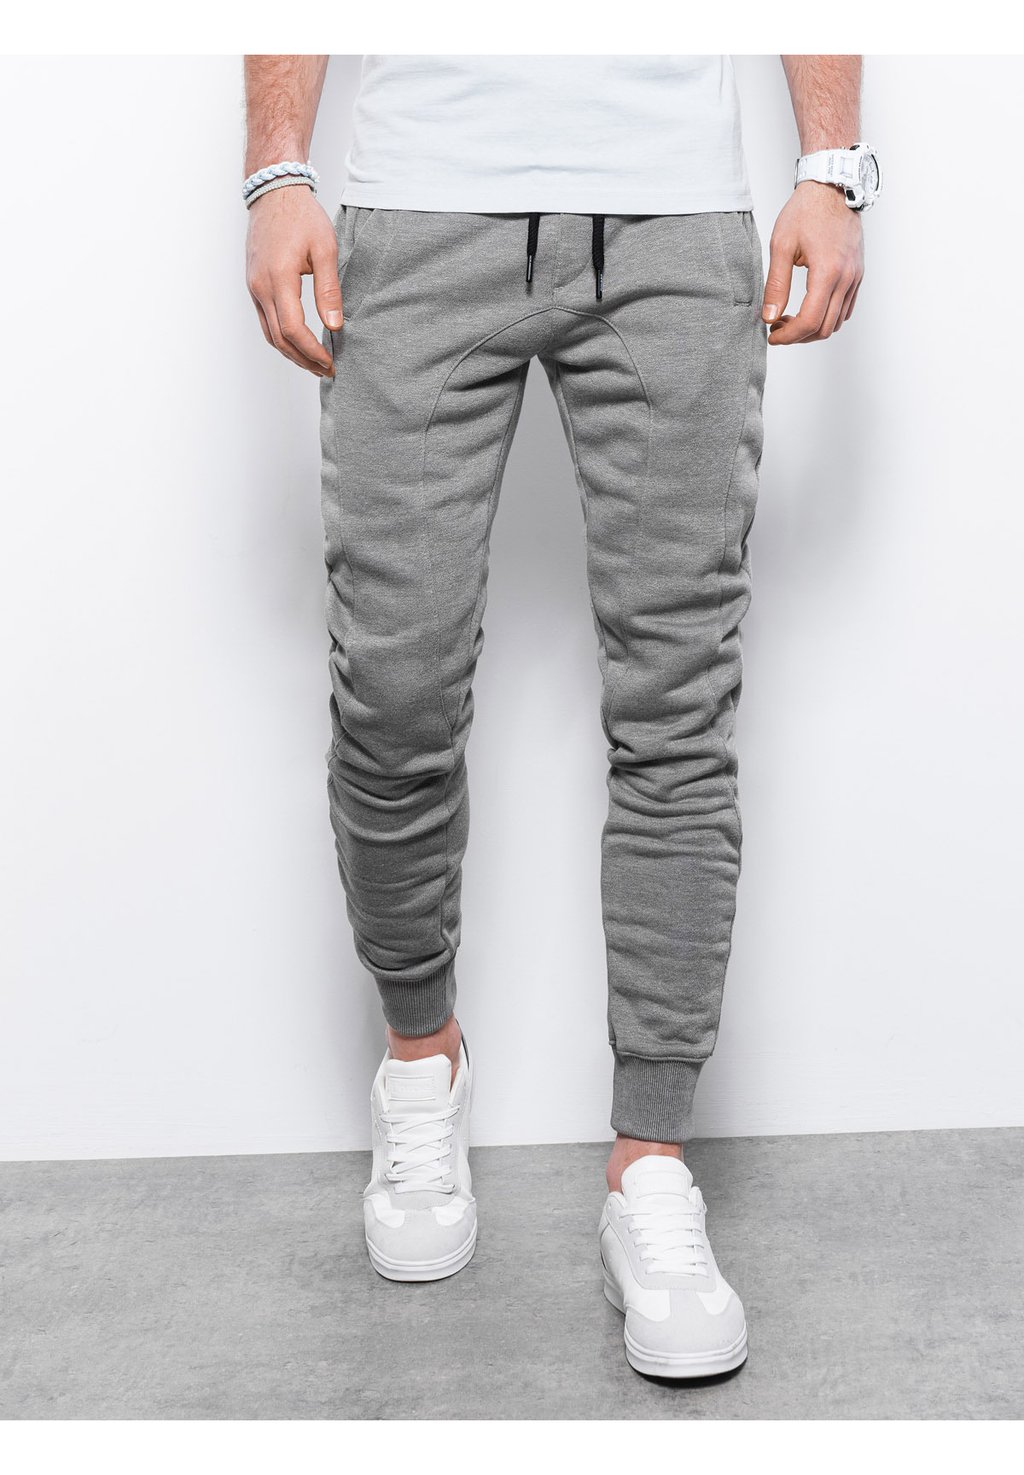 Спортивные брюки Ombre, серый меланж спортивные брюки с выделенными швами ombre серый